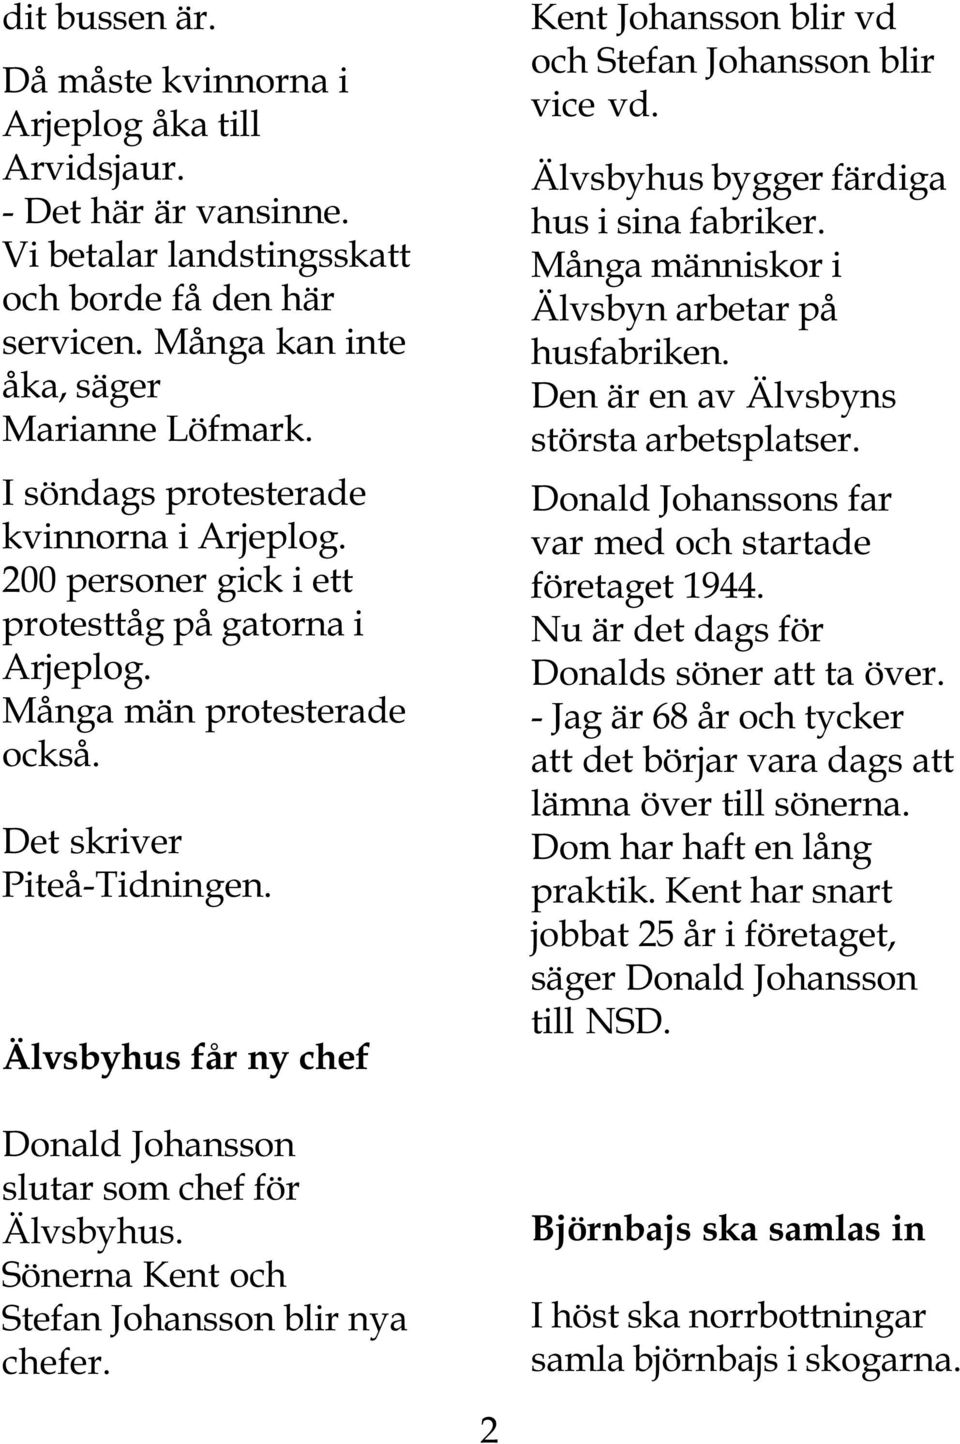 Älvsbyhus får ny chef Donald Johansson slutar som chef för Älvsbyhus. Sönerna Kent och Stefan Johansson blir nya chefer. Kent Johansson blir vd och Stefan Johansson blir vice vd.